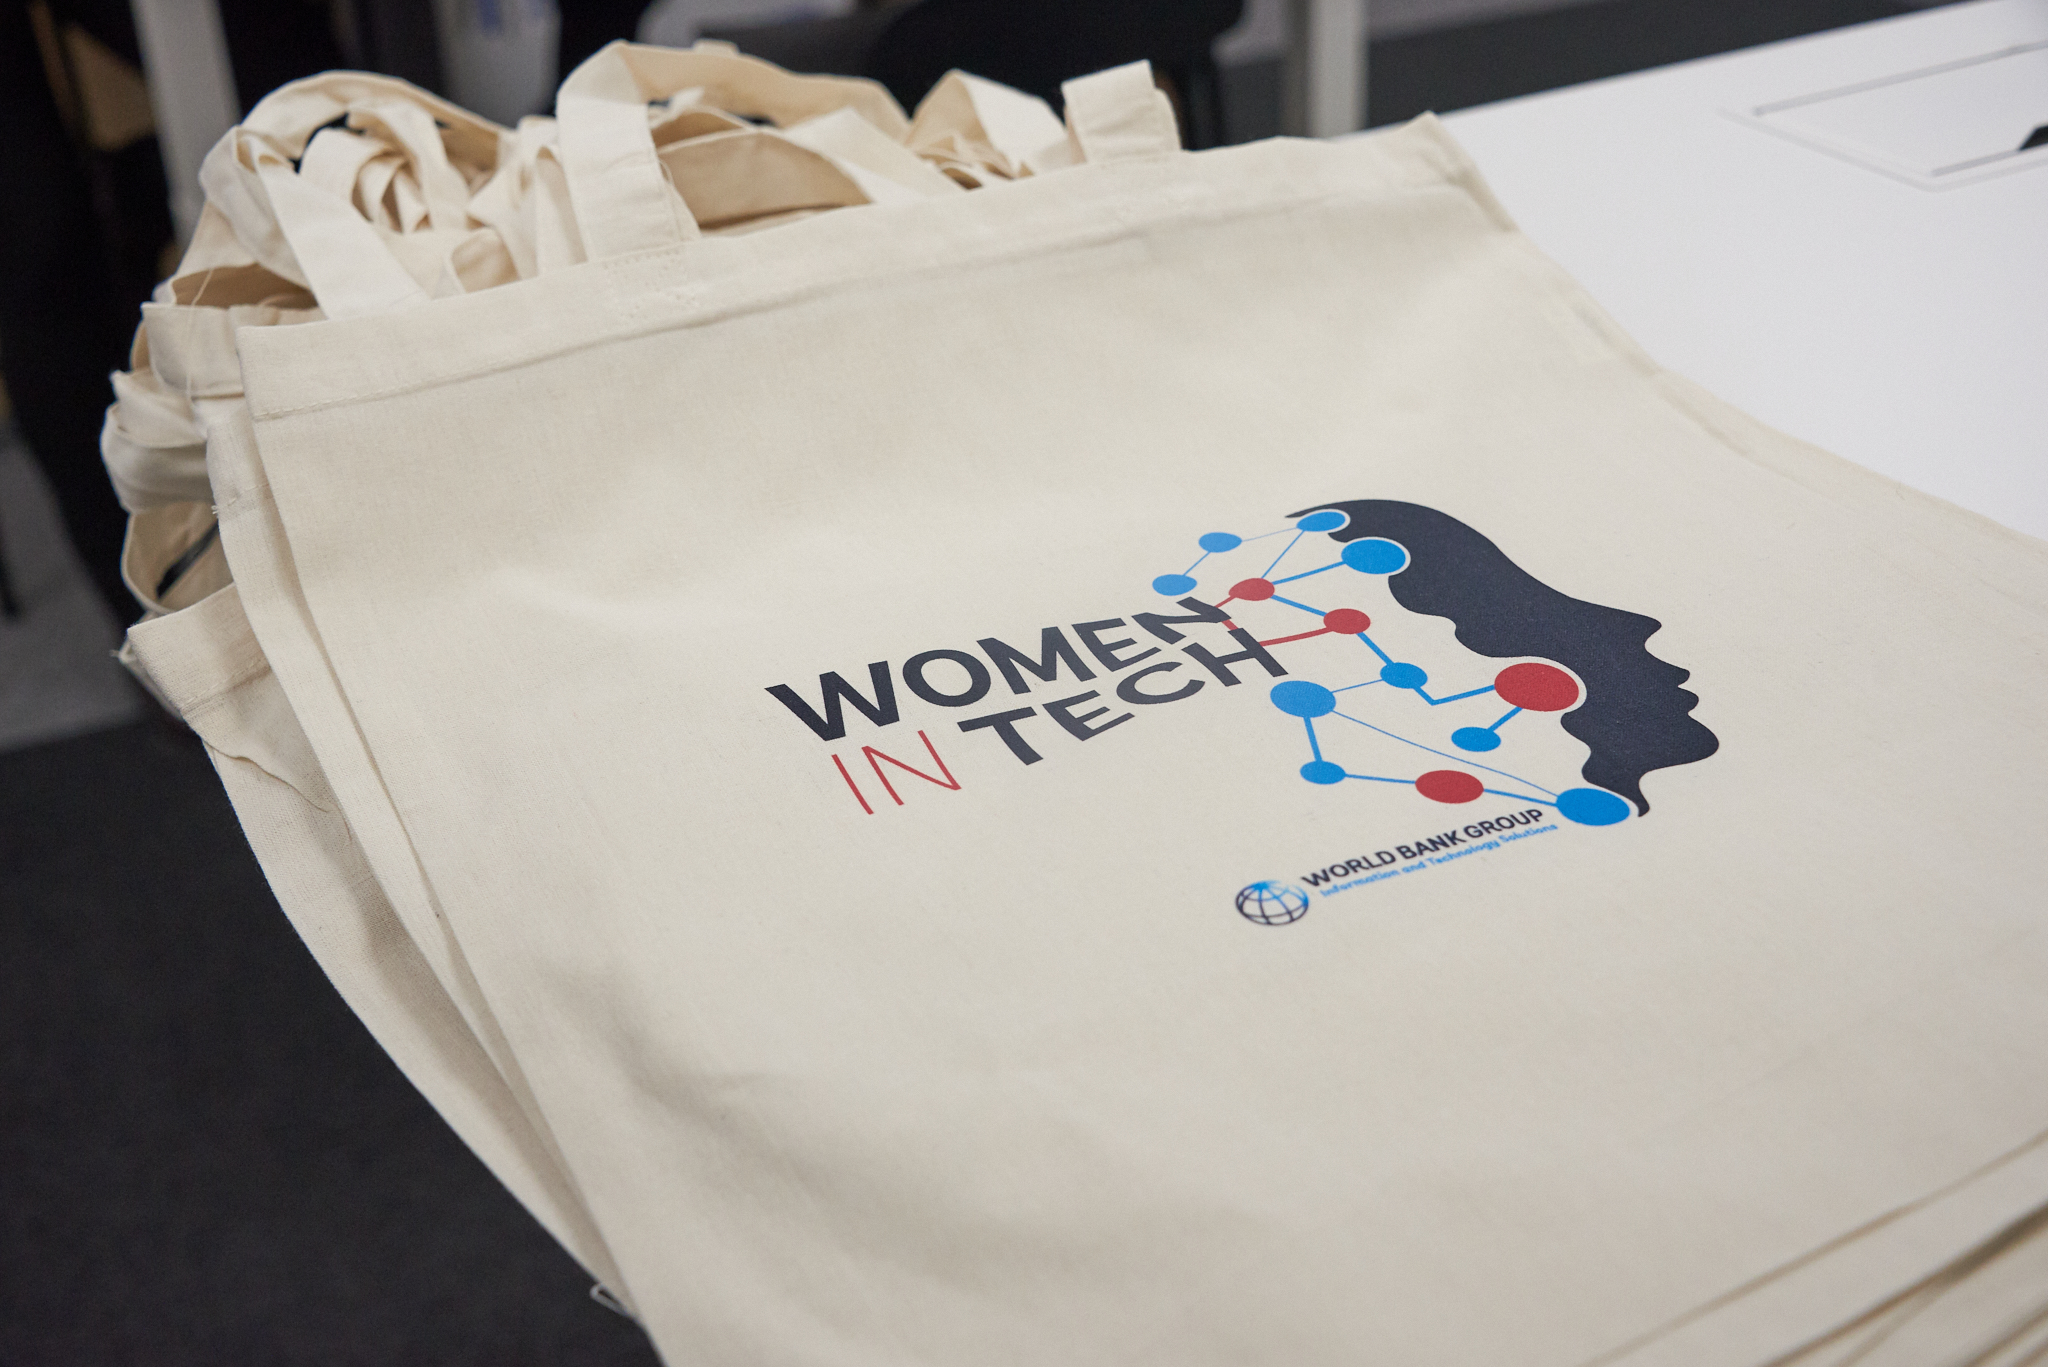 WomenTech Network - World Bank Group